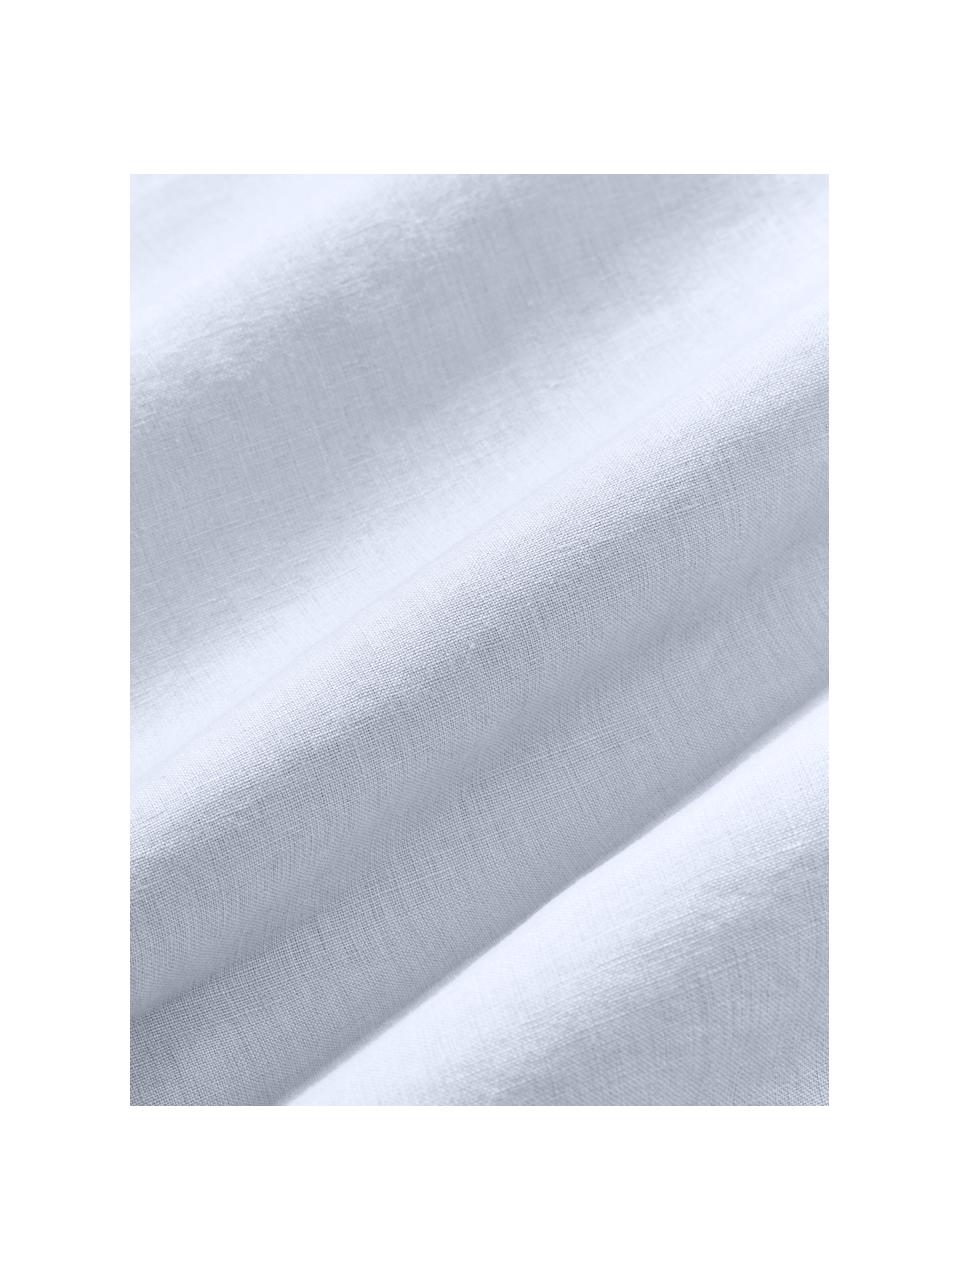 Lenzuola in lino lavato Airy, 100% lino, certificato lino europeo
Densità del filato 165 TC, qualità standard

Il lino è una fibra naturale caratterizzata da traspirabilità, resistenza e morbidezza. Il lino è un materiale rinfrescante e assorbente che assorbe e rilascia rapidamente l'umidità, rendendolo ideale per le temperature calde.

Il materiale utilizzato in questo prodotto è stato testato per le sostanze nocive e certificato secondo lo STANDARD 100 by OEKO-TEX®, 137, CITEVE., Azzurro, Larg. 240 x Lung. 280 cm